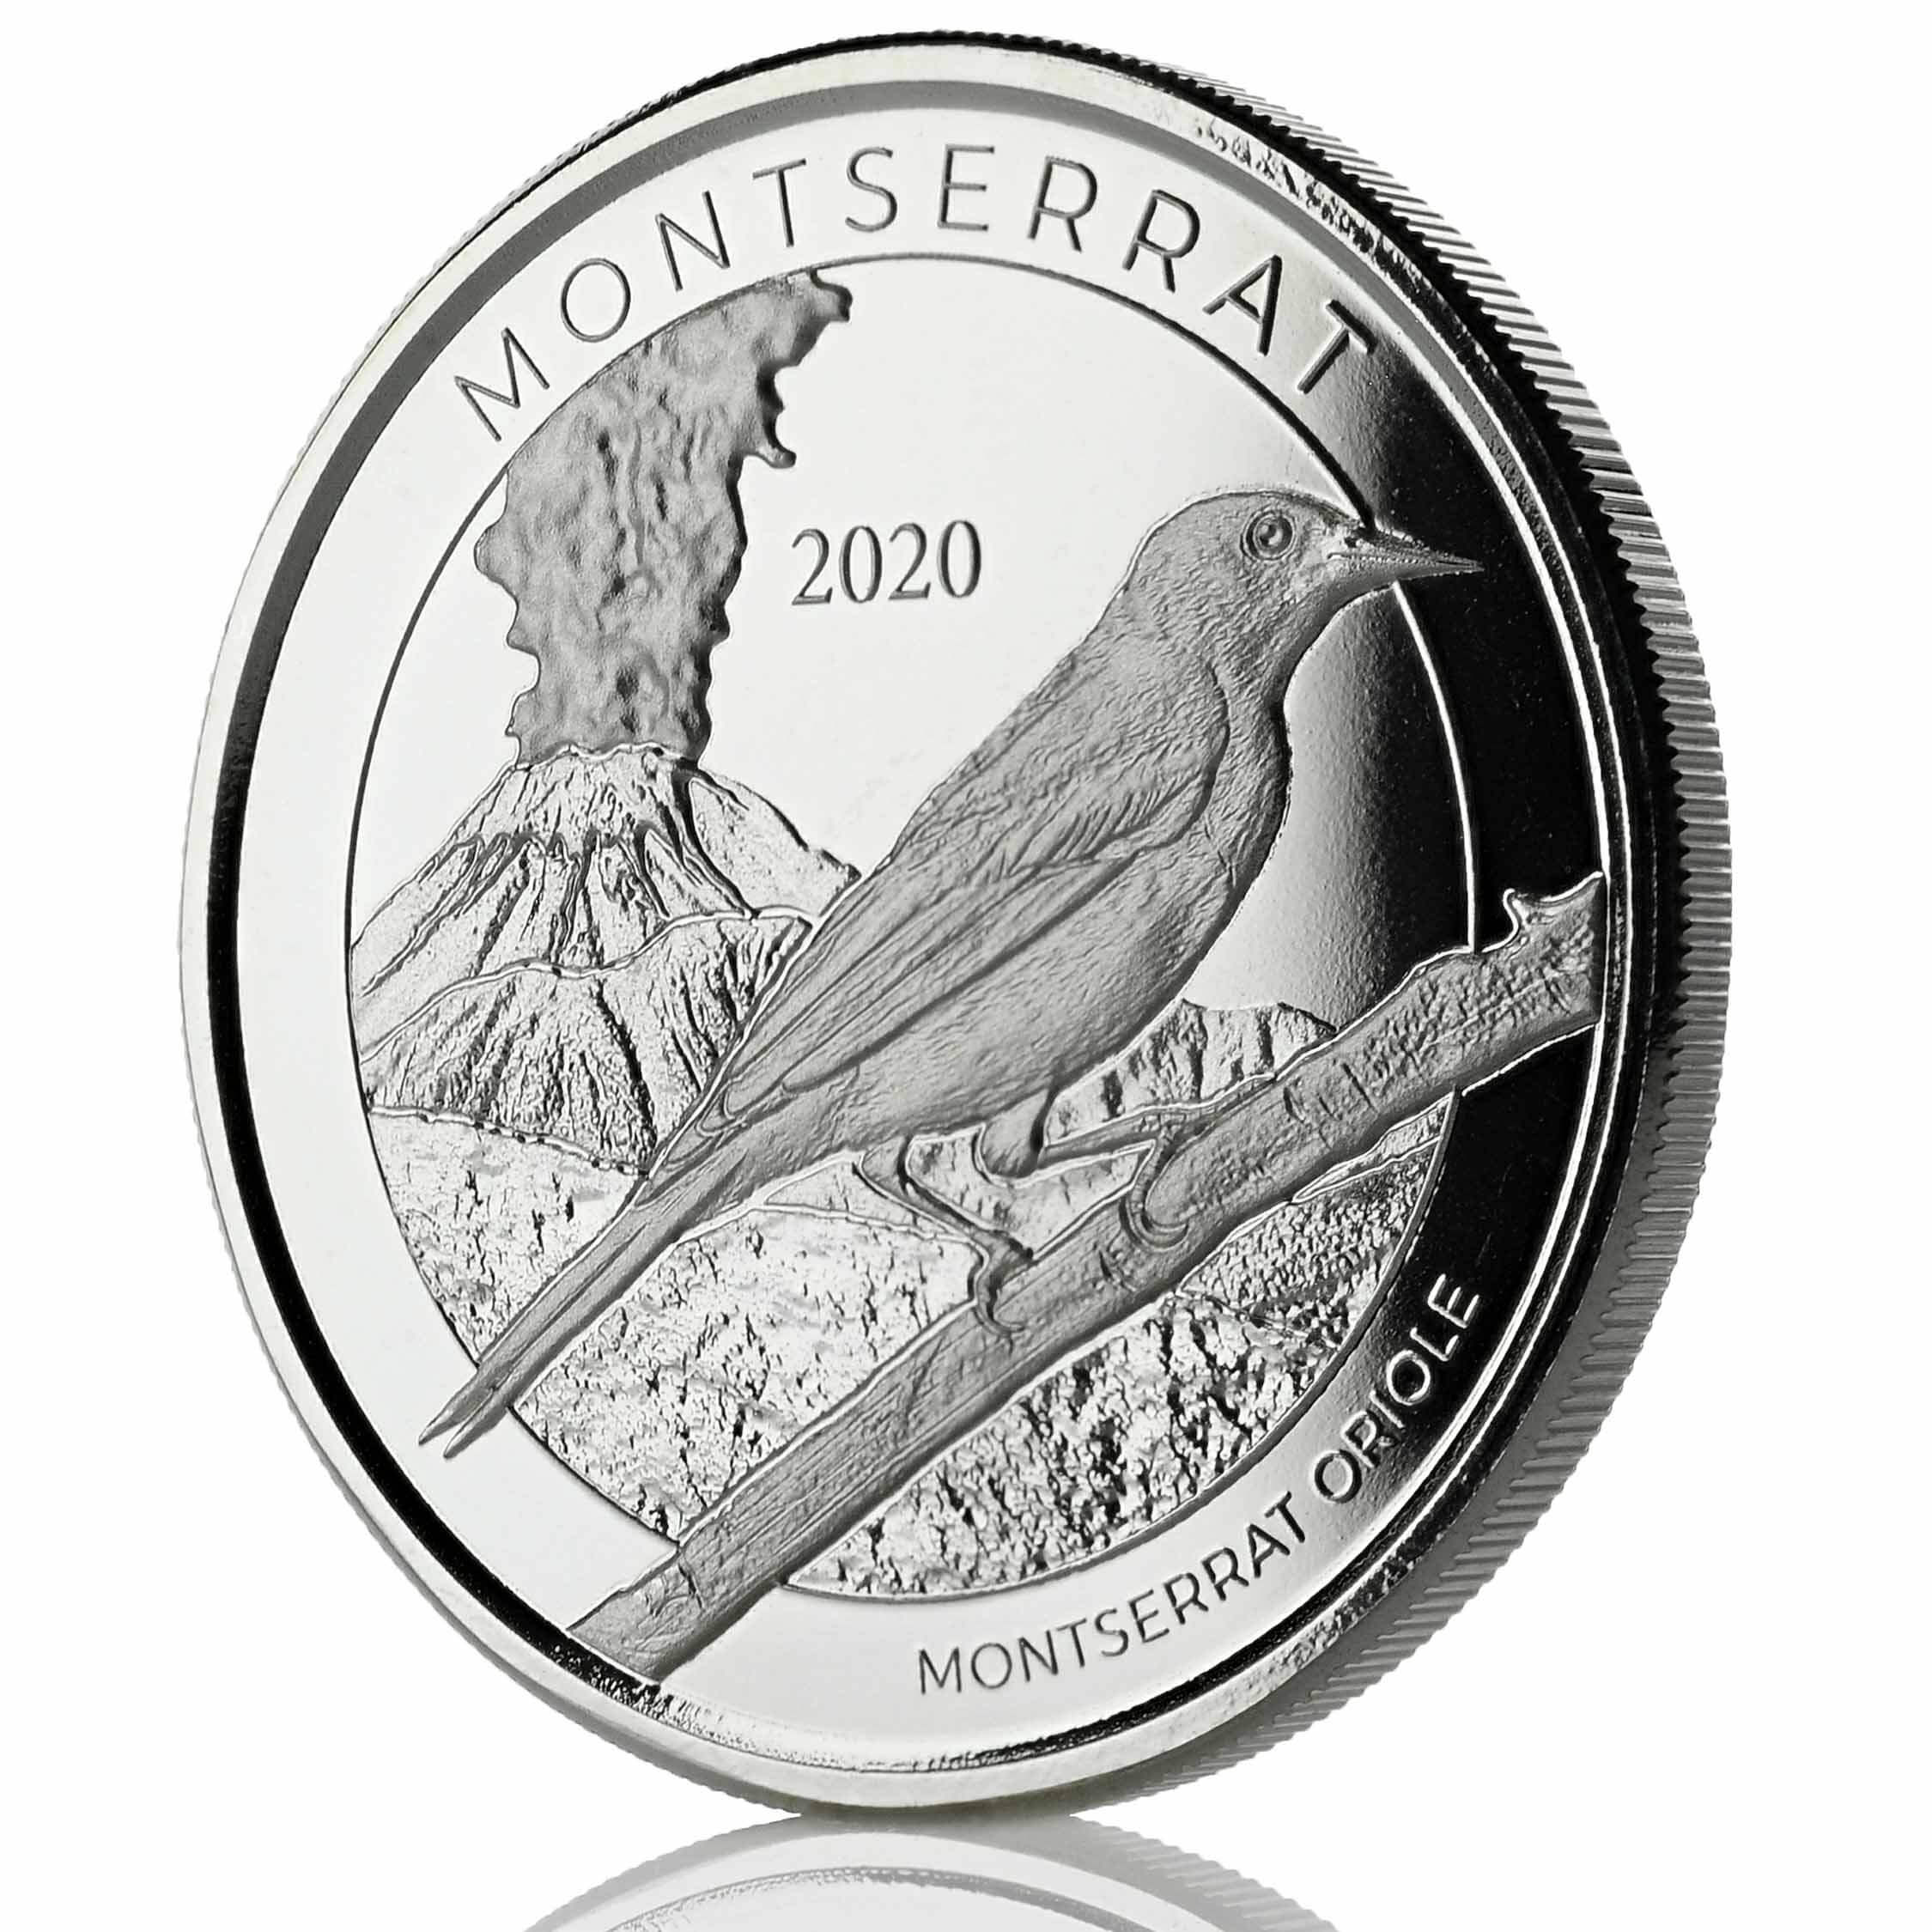 2020 Ec8 Antigua & Barbuda "rum Runner" 1 Oz Silver Coin (copy)